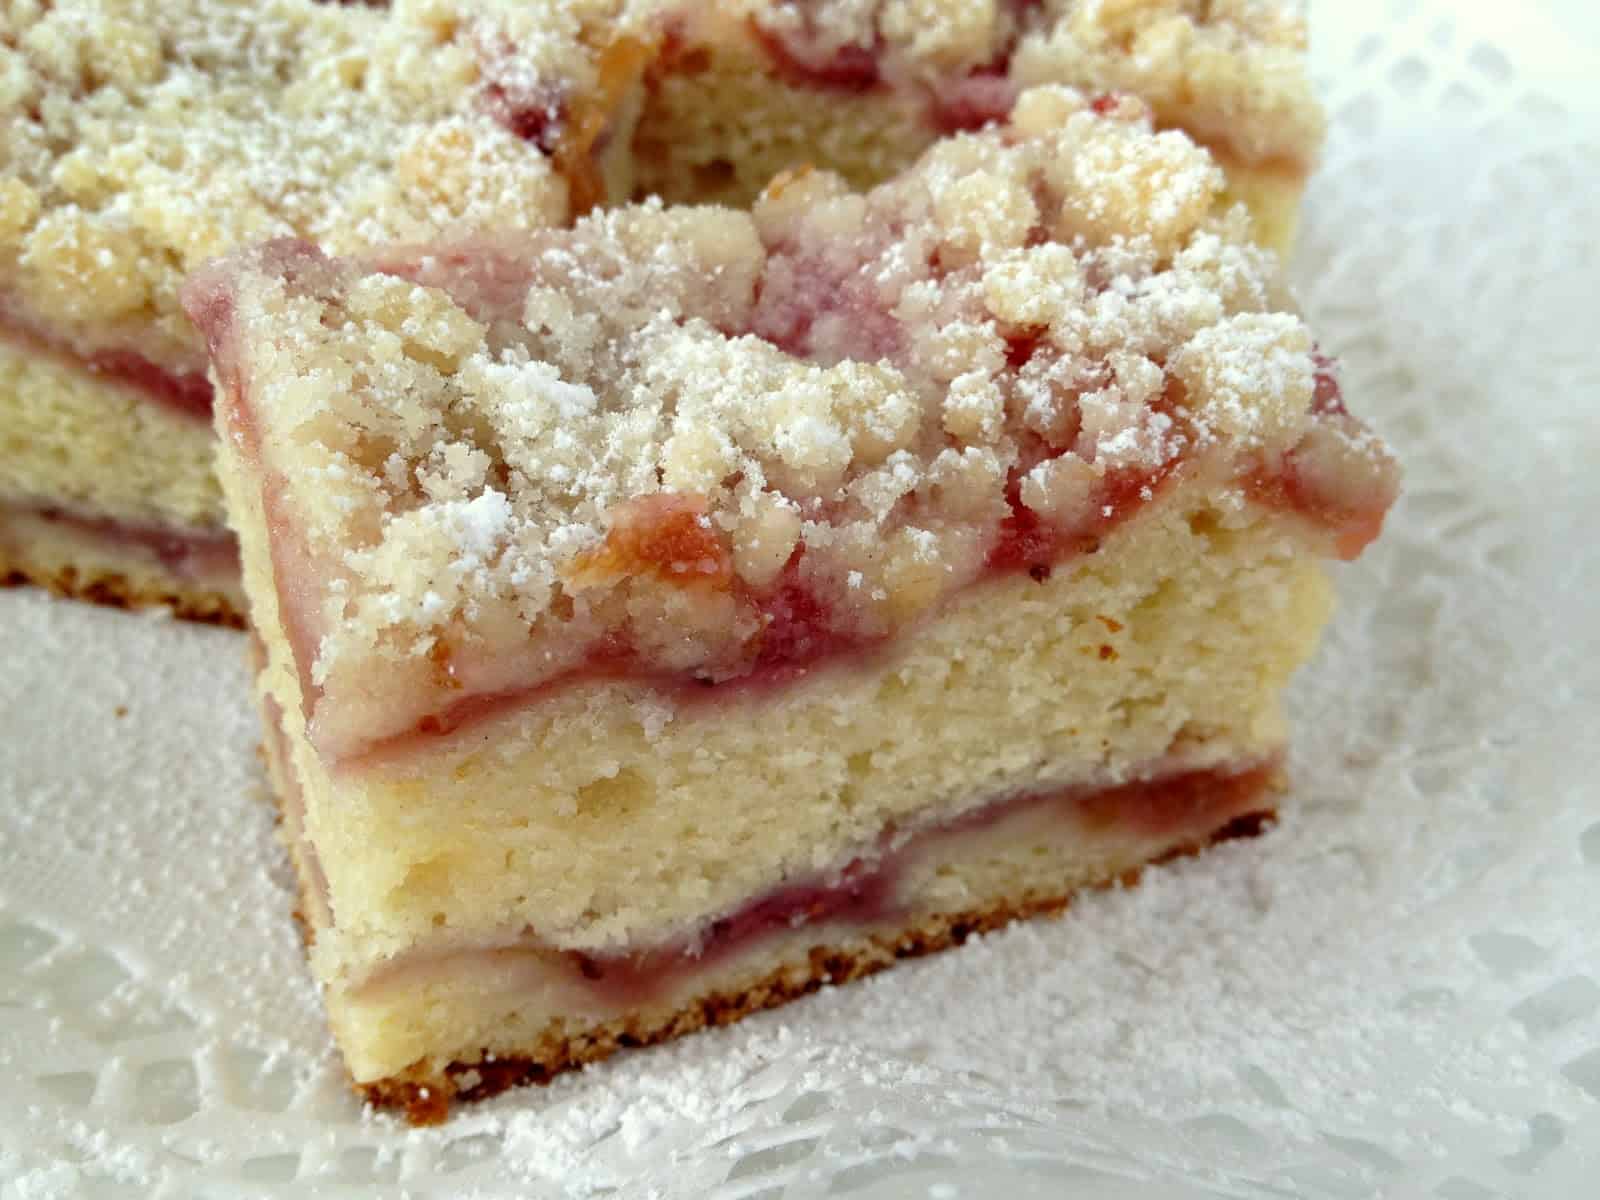 Strawberry rhubarb crumb cake